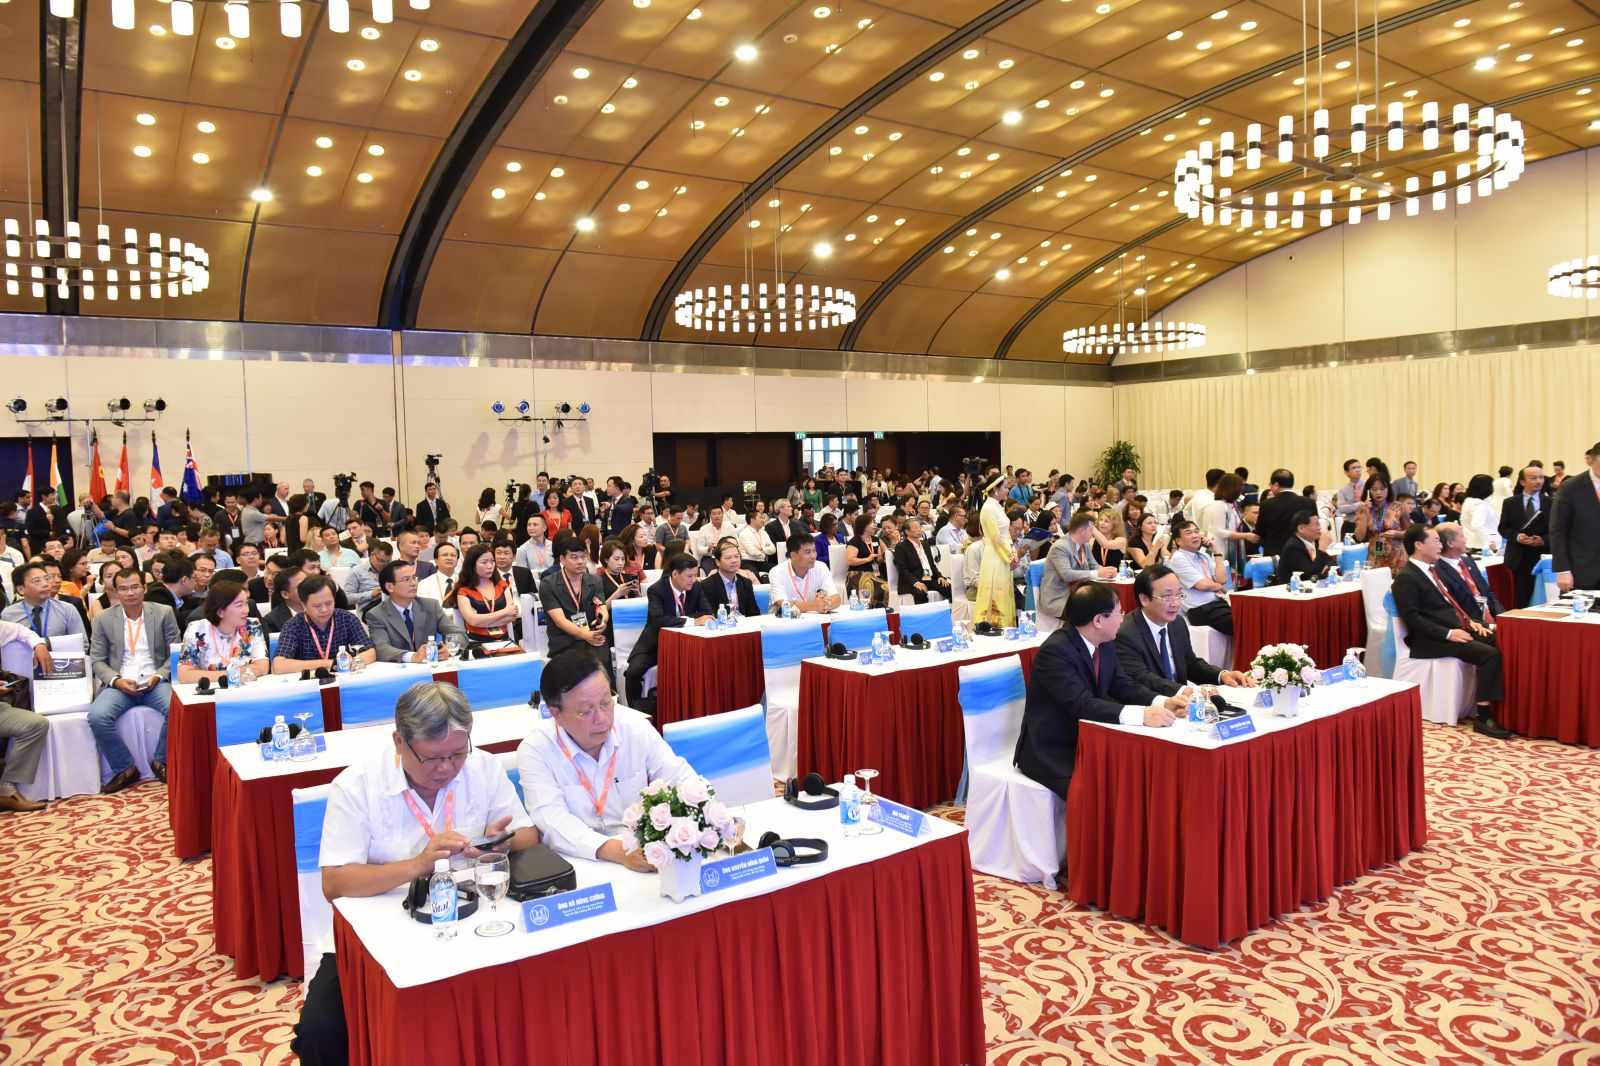 Hội nghị thu hút được rất nhiều sự quan tâm của khách nước ngoài cũng như trong nước.